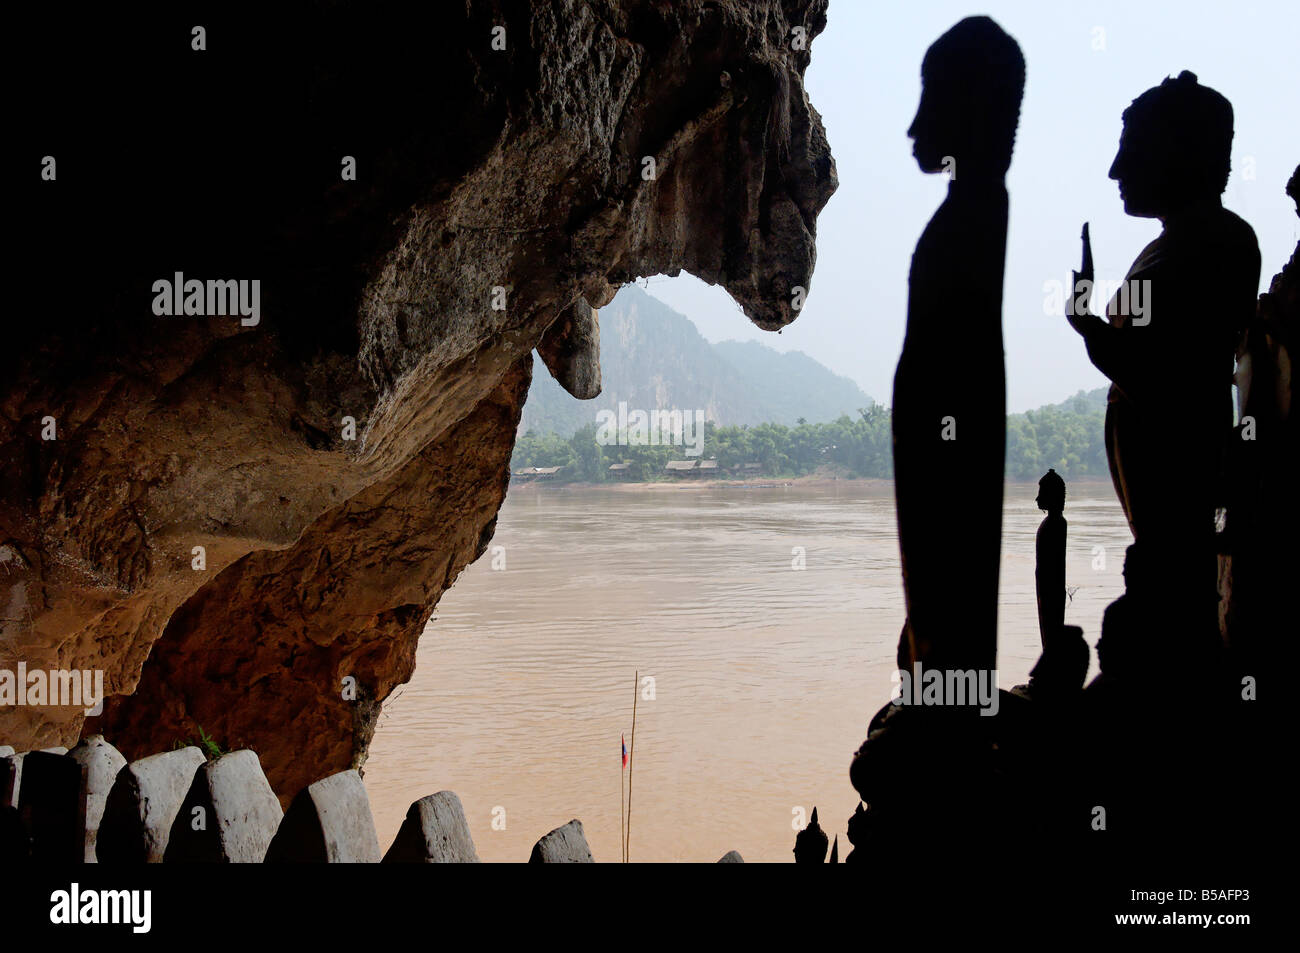 Pak Ou le grotte, un ben noto sito buddista e luogo di pellegrinaggio, 25km da Luang Prabang, Laos, Indocina, sud-est asiatico Foto Stock